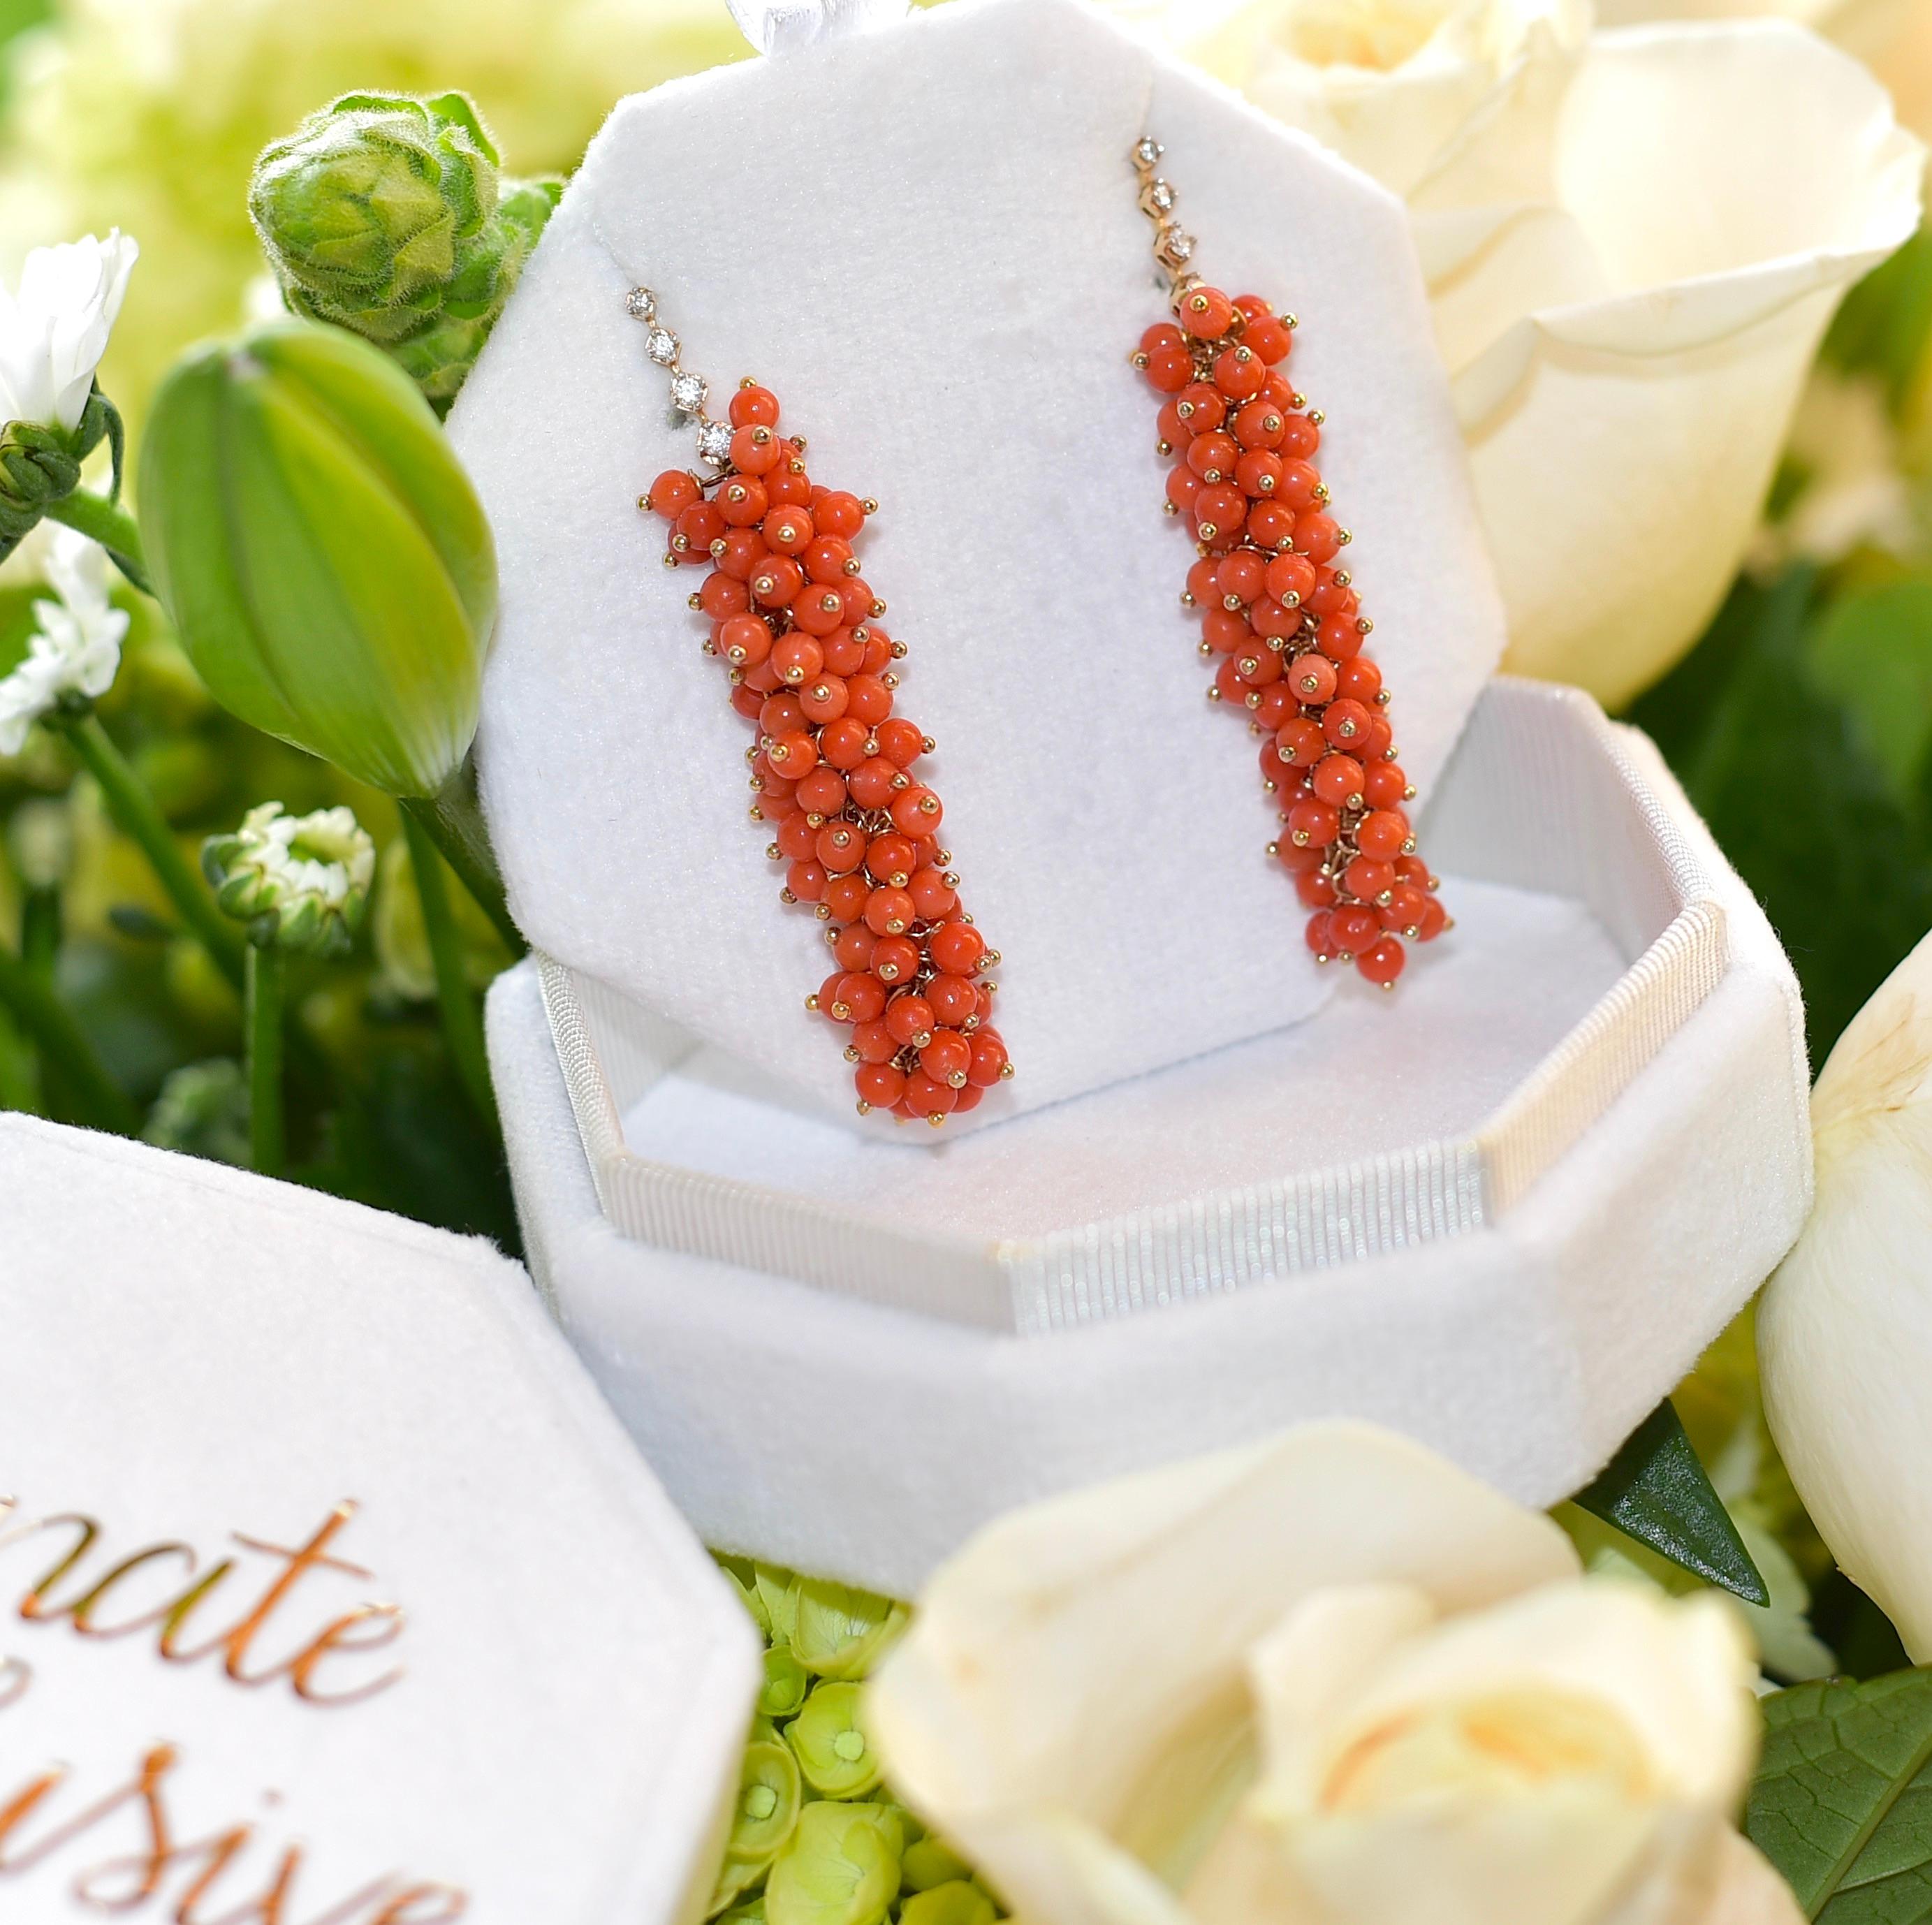 Bead Italian Sardinia Salmon Orange Coral Earrings in 14K Solid Yellow Gold, Diamonds